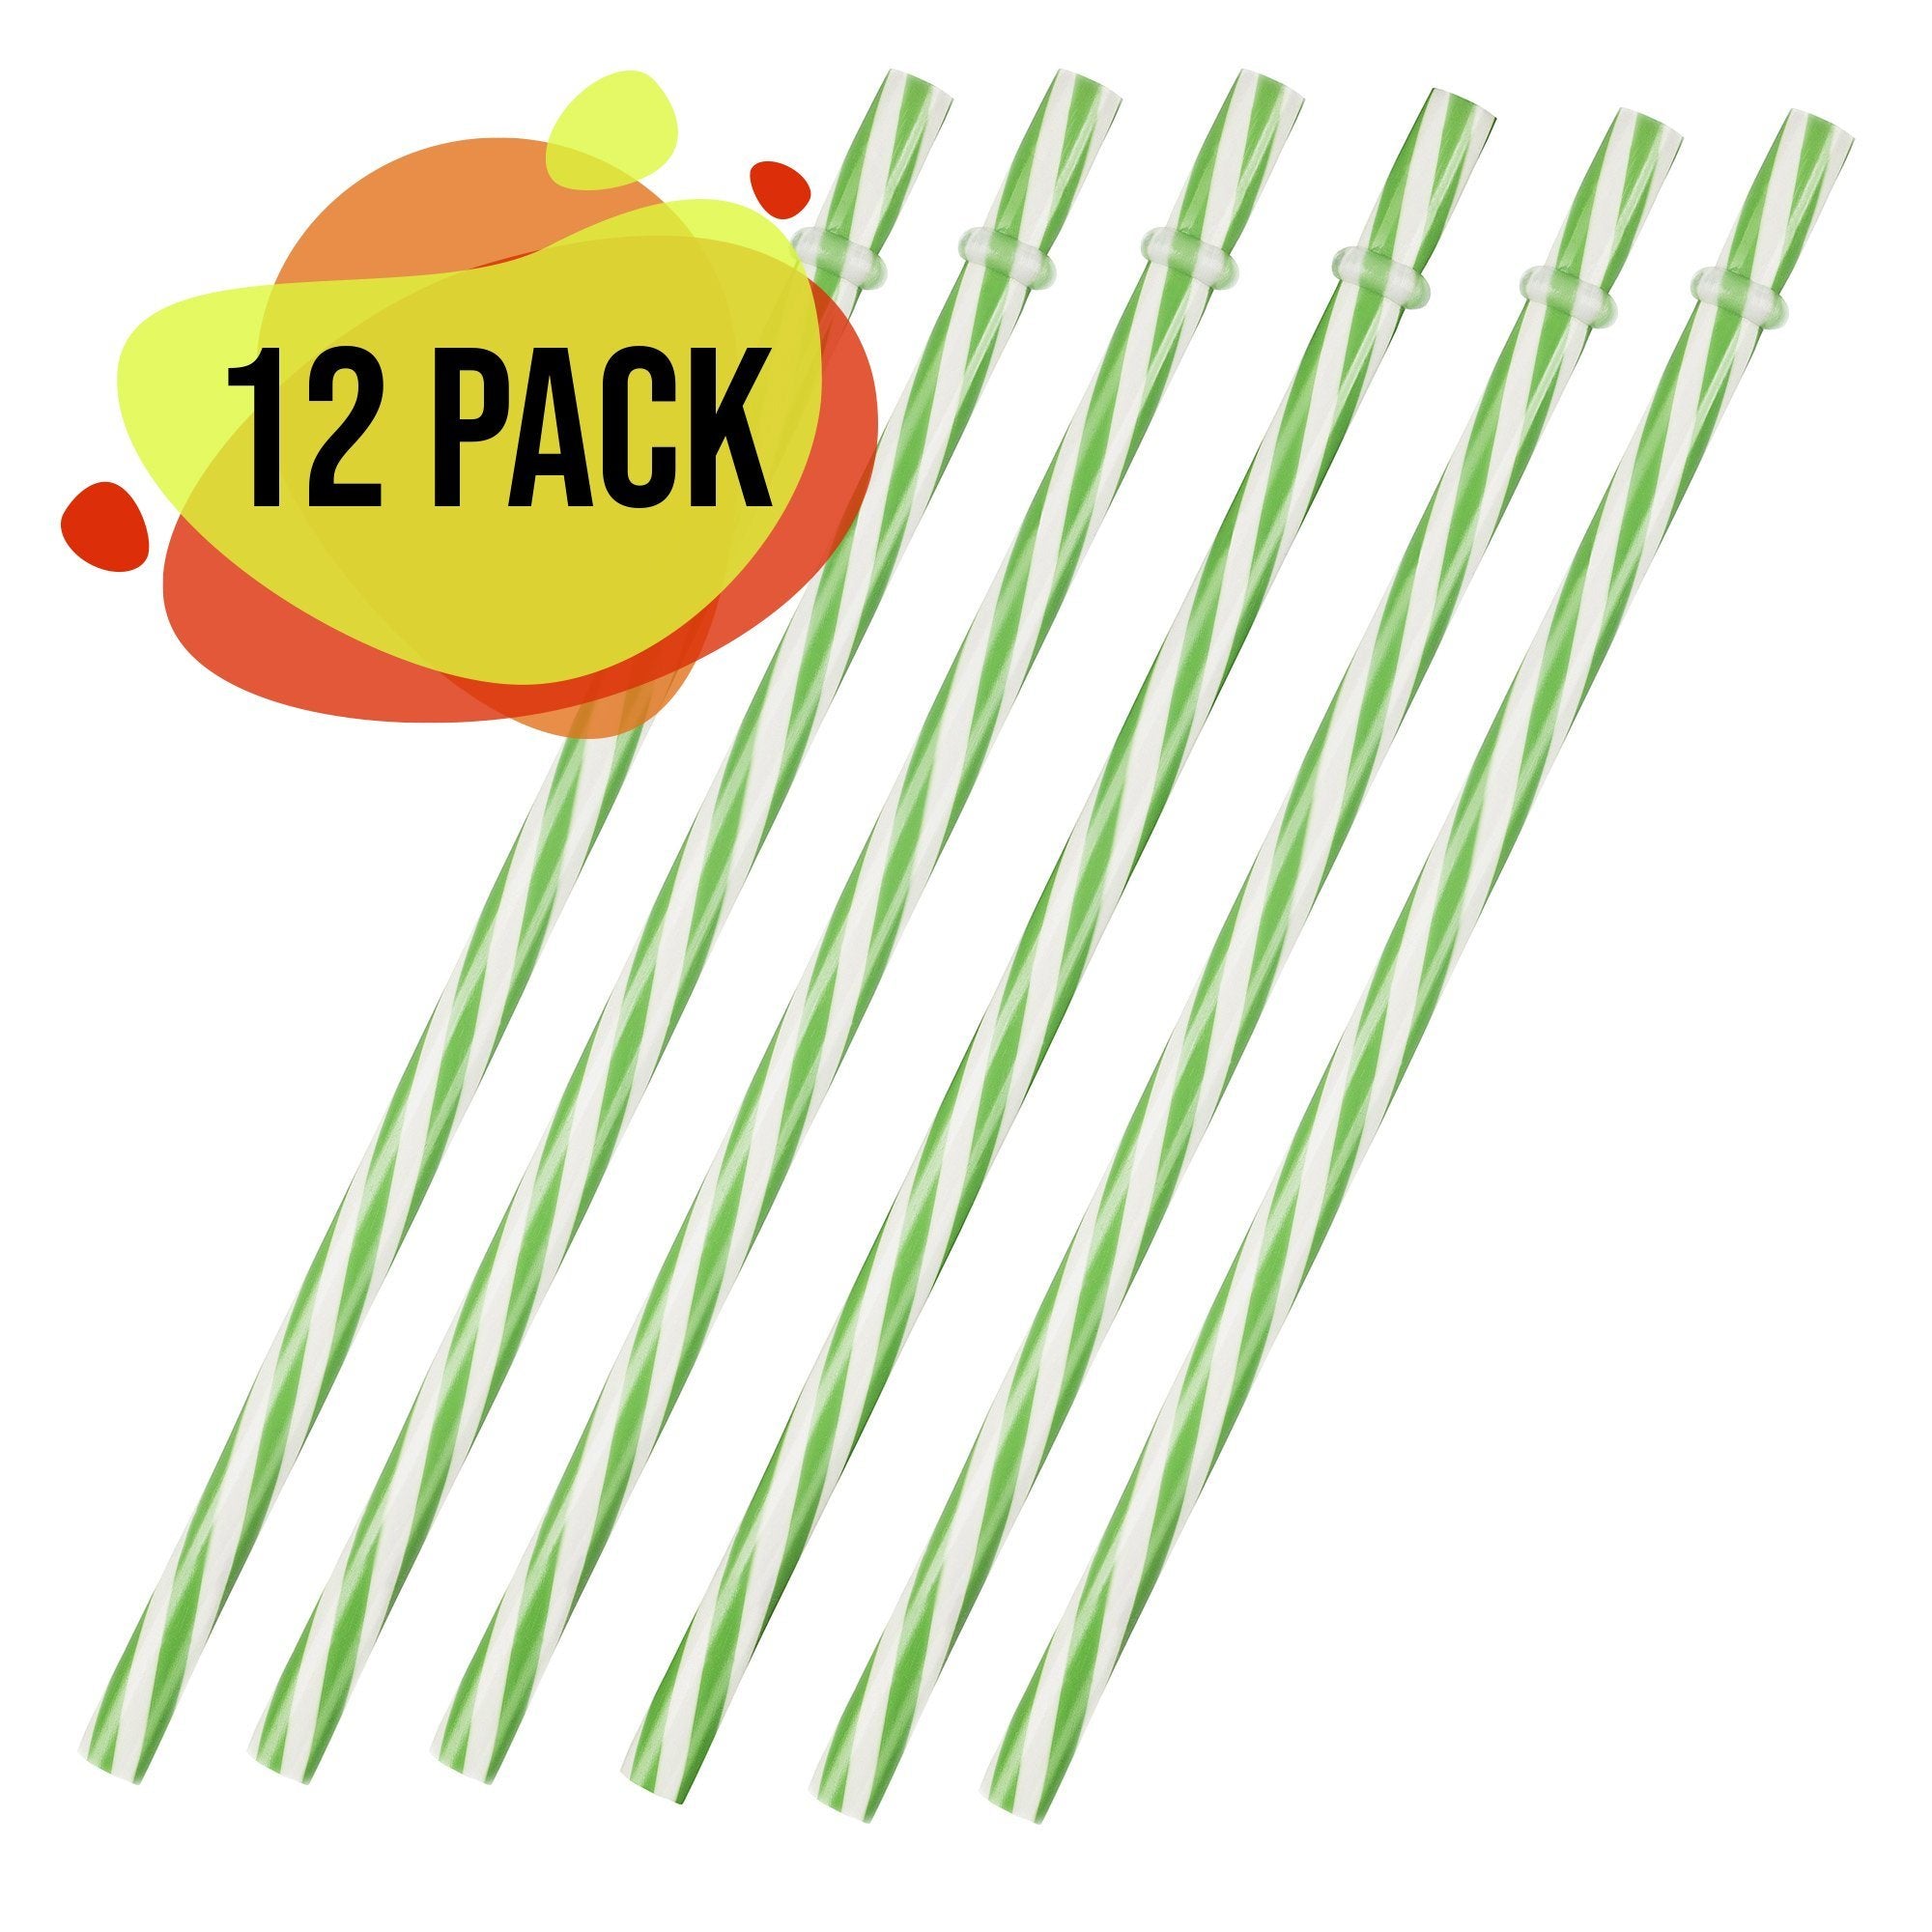 Popote Verde con Blanco Plástico 12 Pack - MarchanteMX